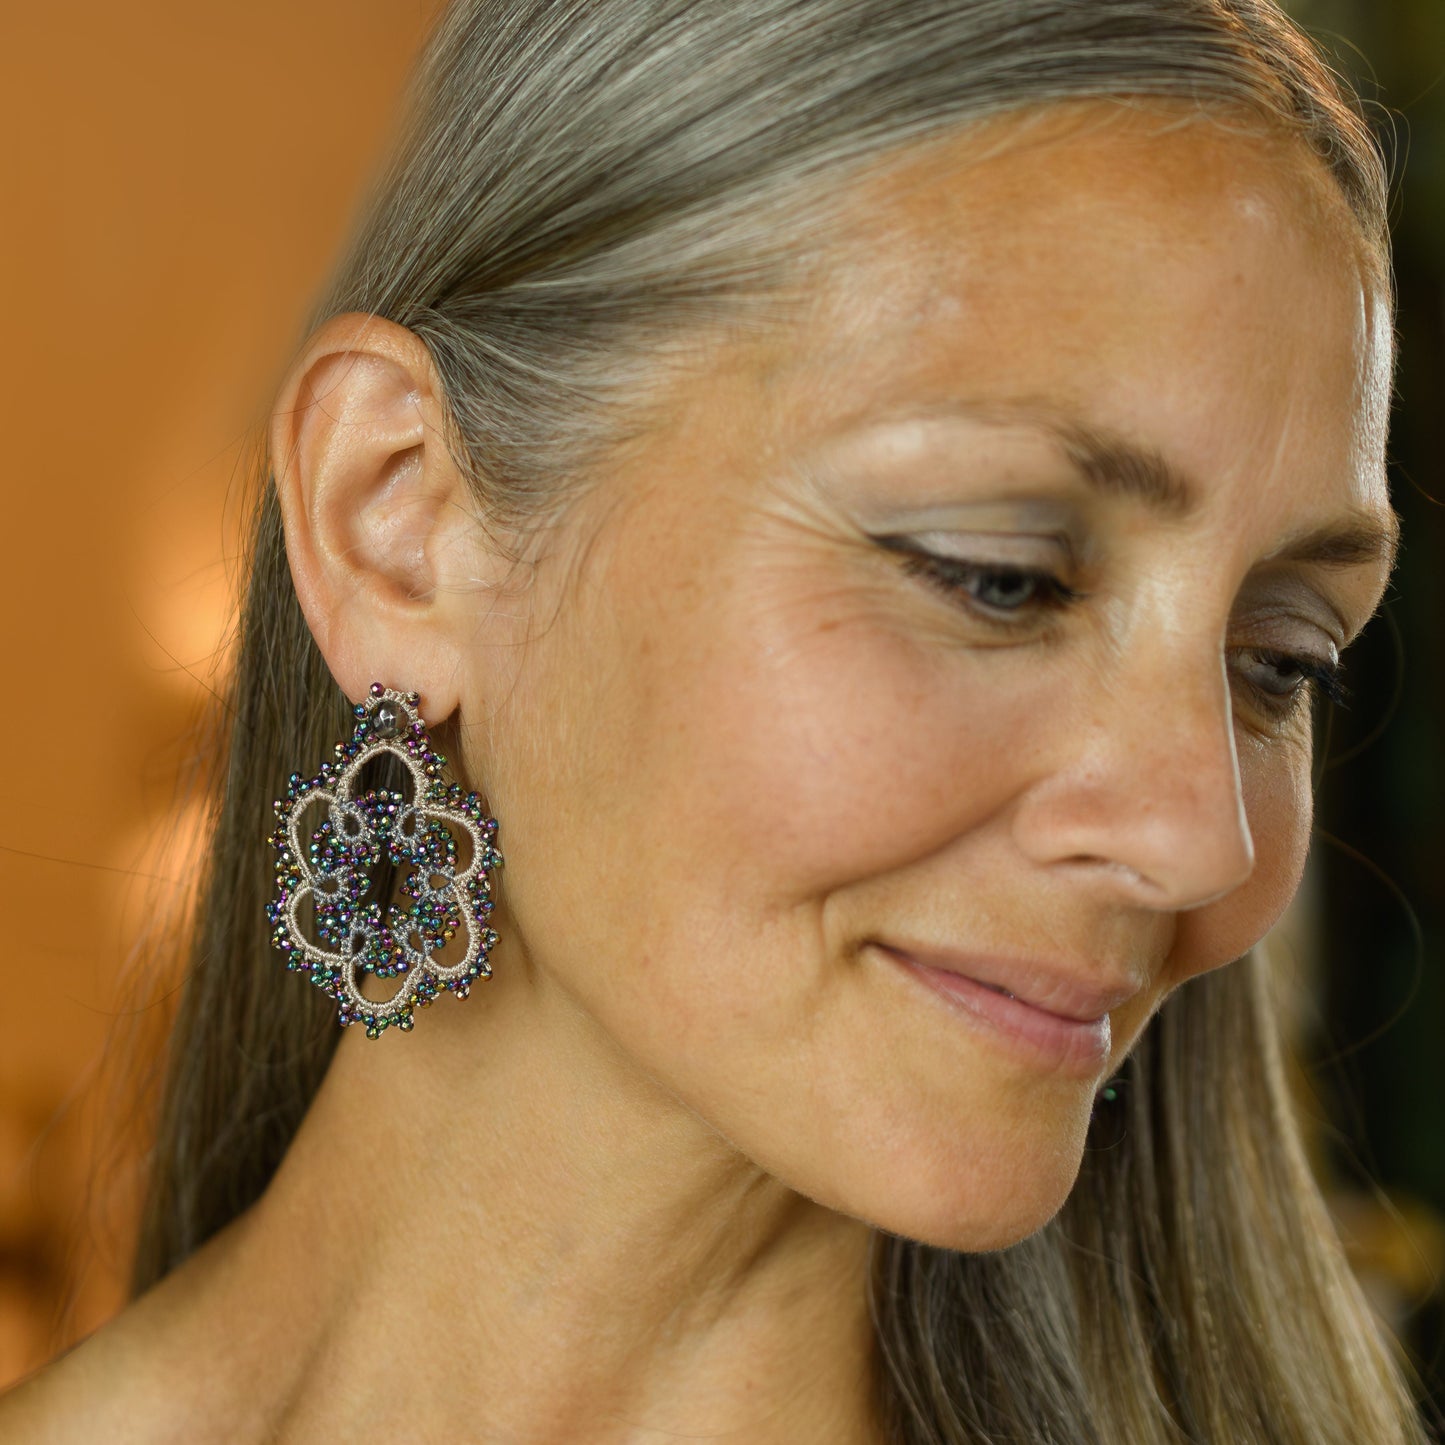 Flower bi-tone lace earrings, black nude bronze